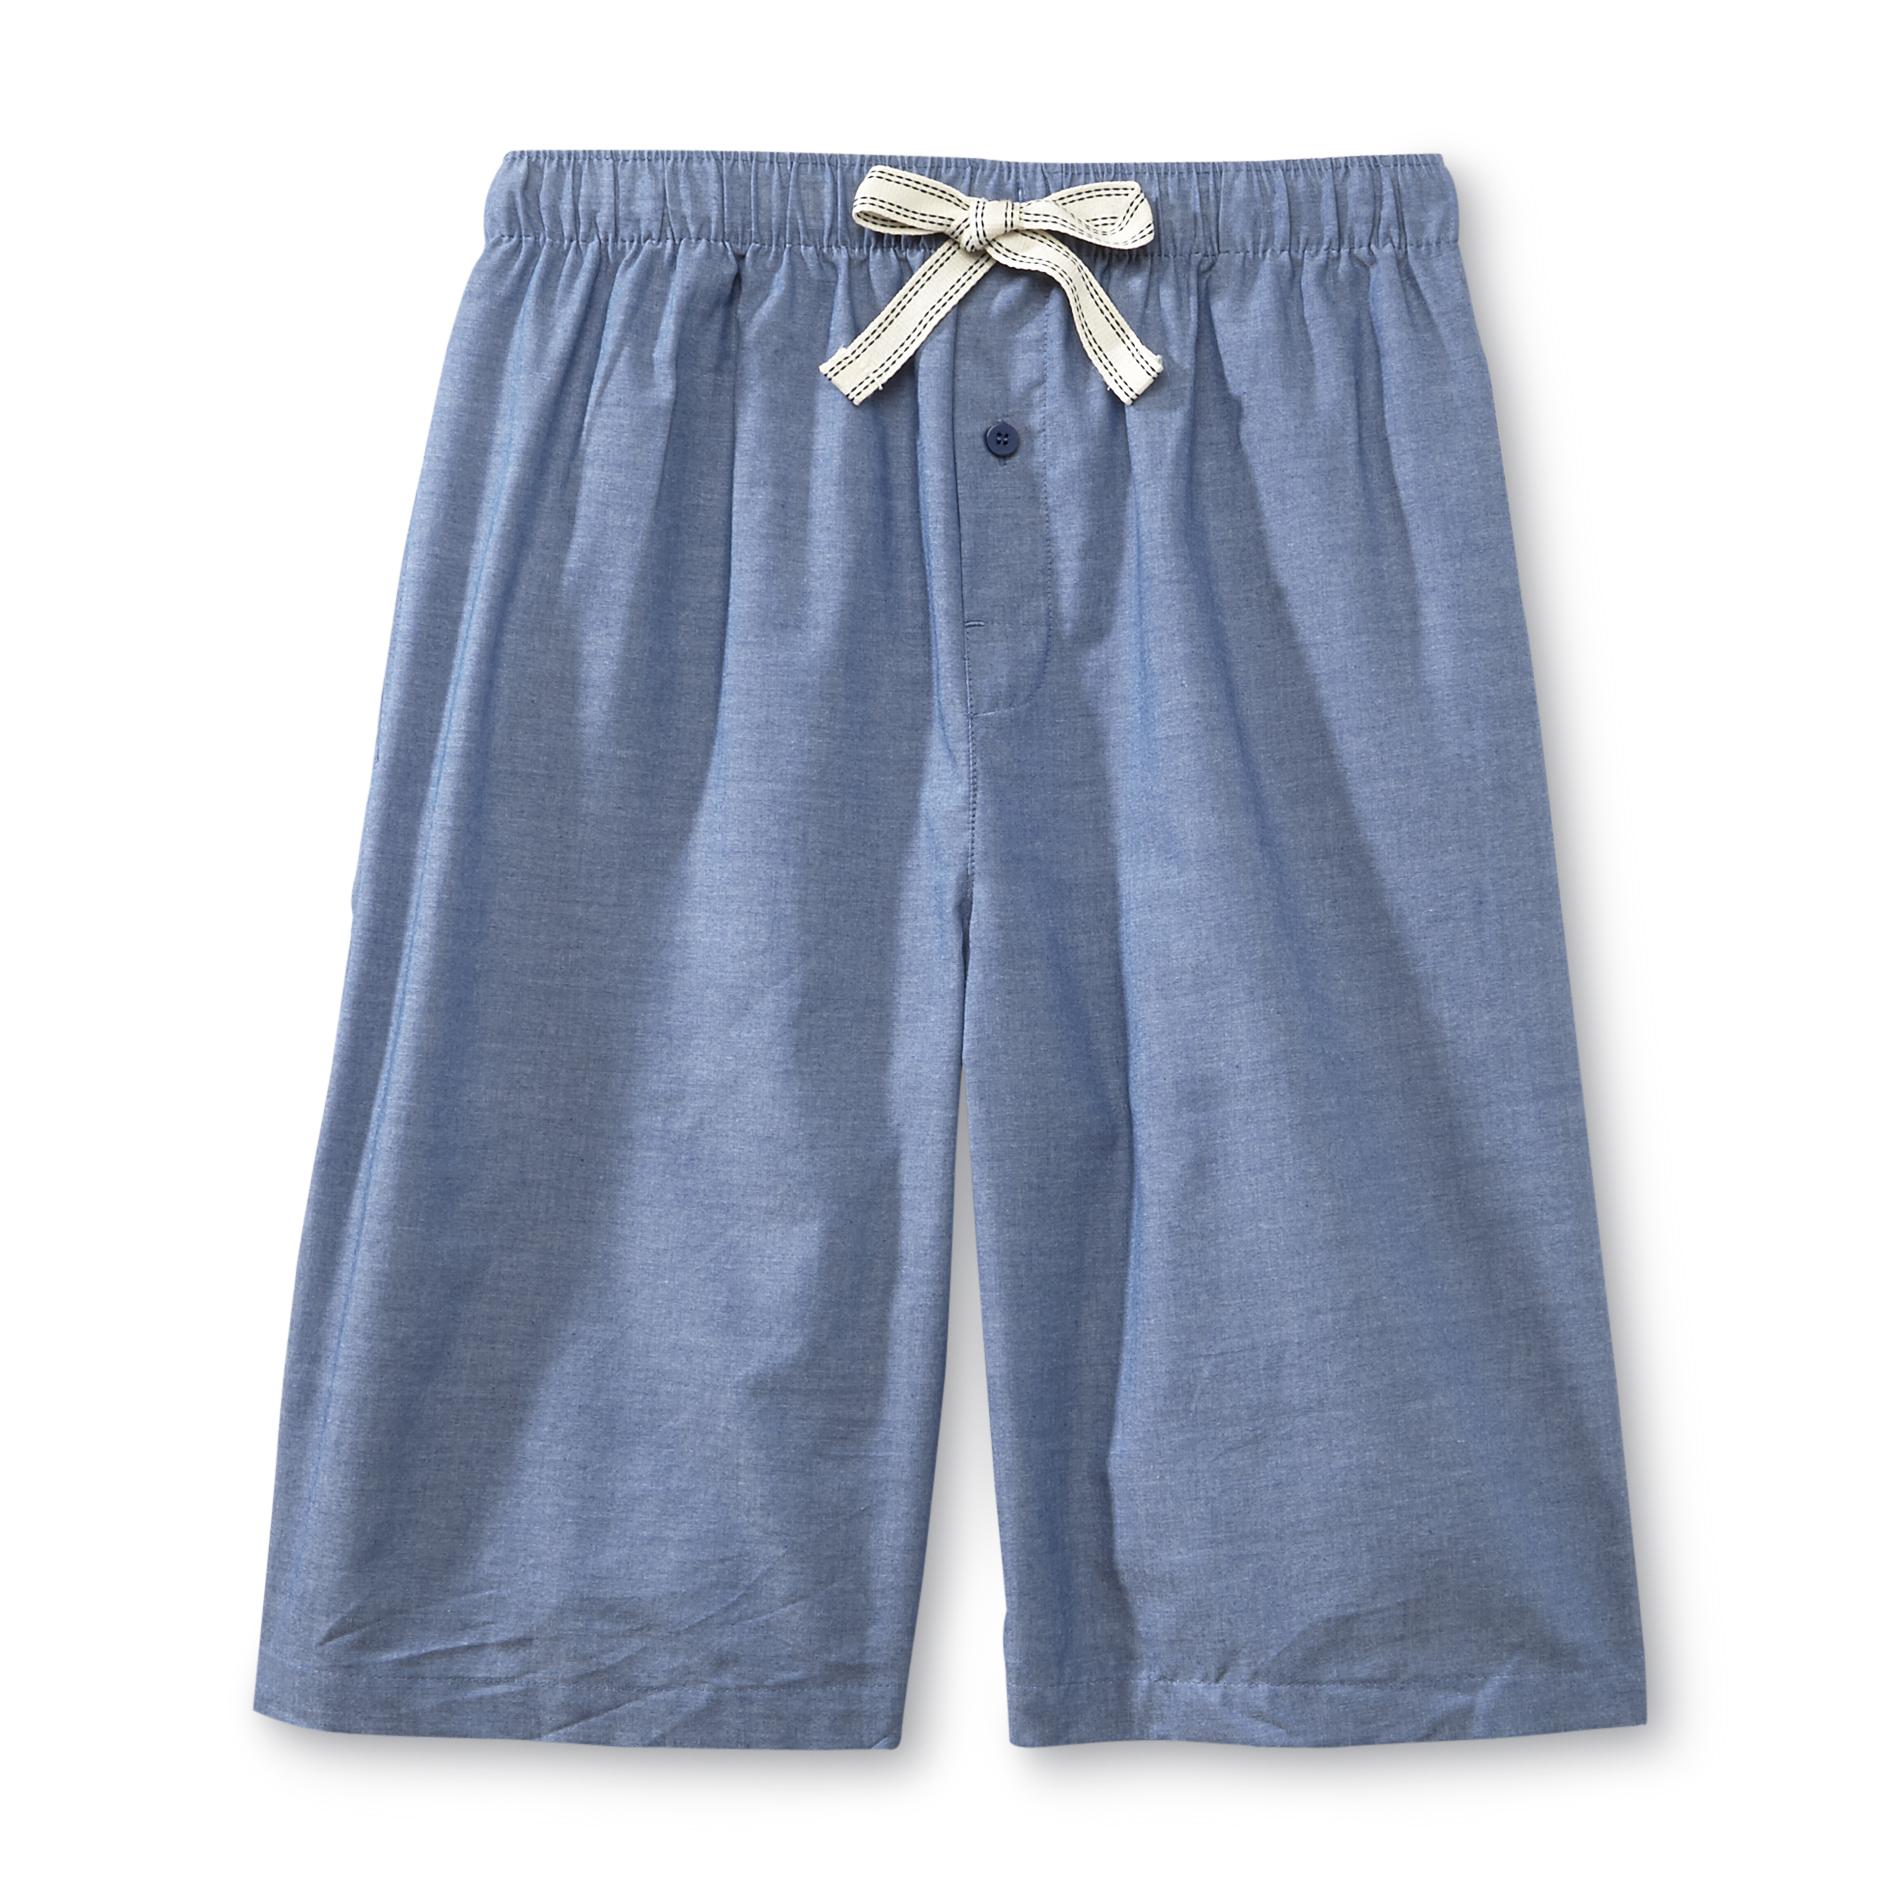 Basic Editions Men's Big & Tall Chambray Pajama Shorts